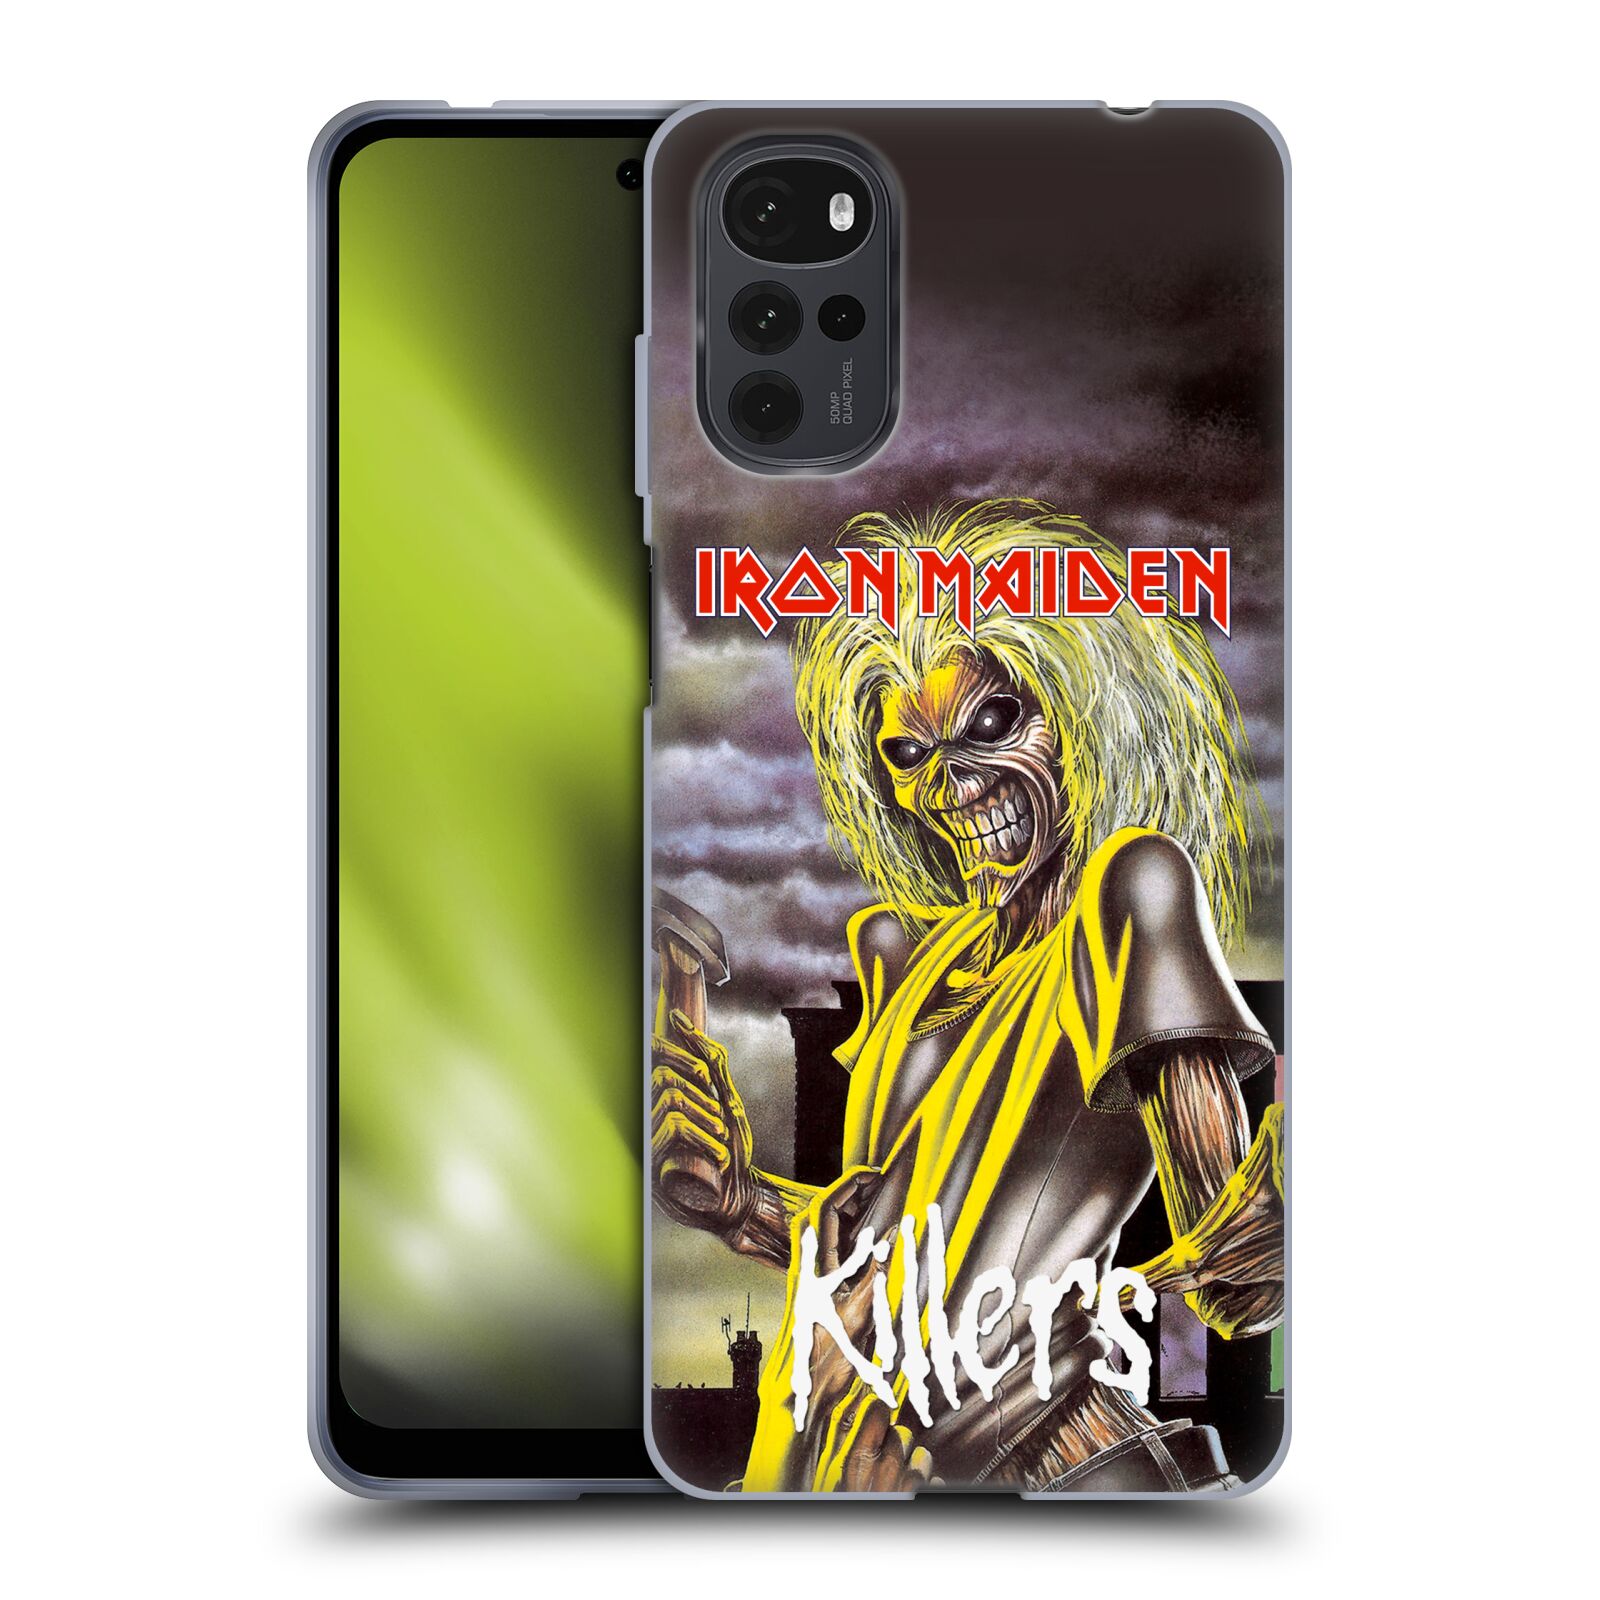 Silikonové pouzdro na mobil Motorola Moto G22 - Head Case - Iron Maiden - Killers